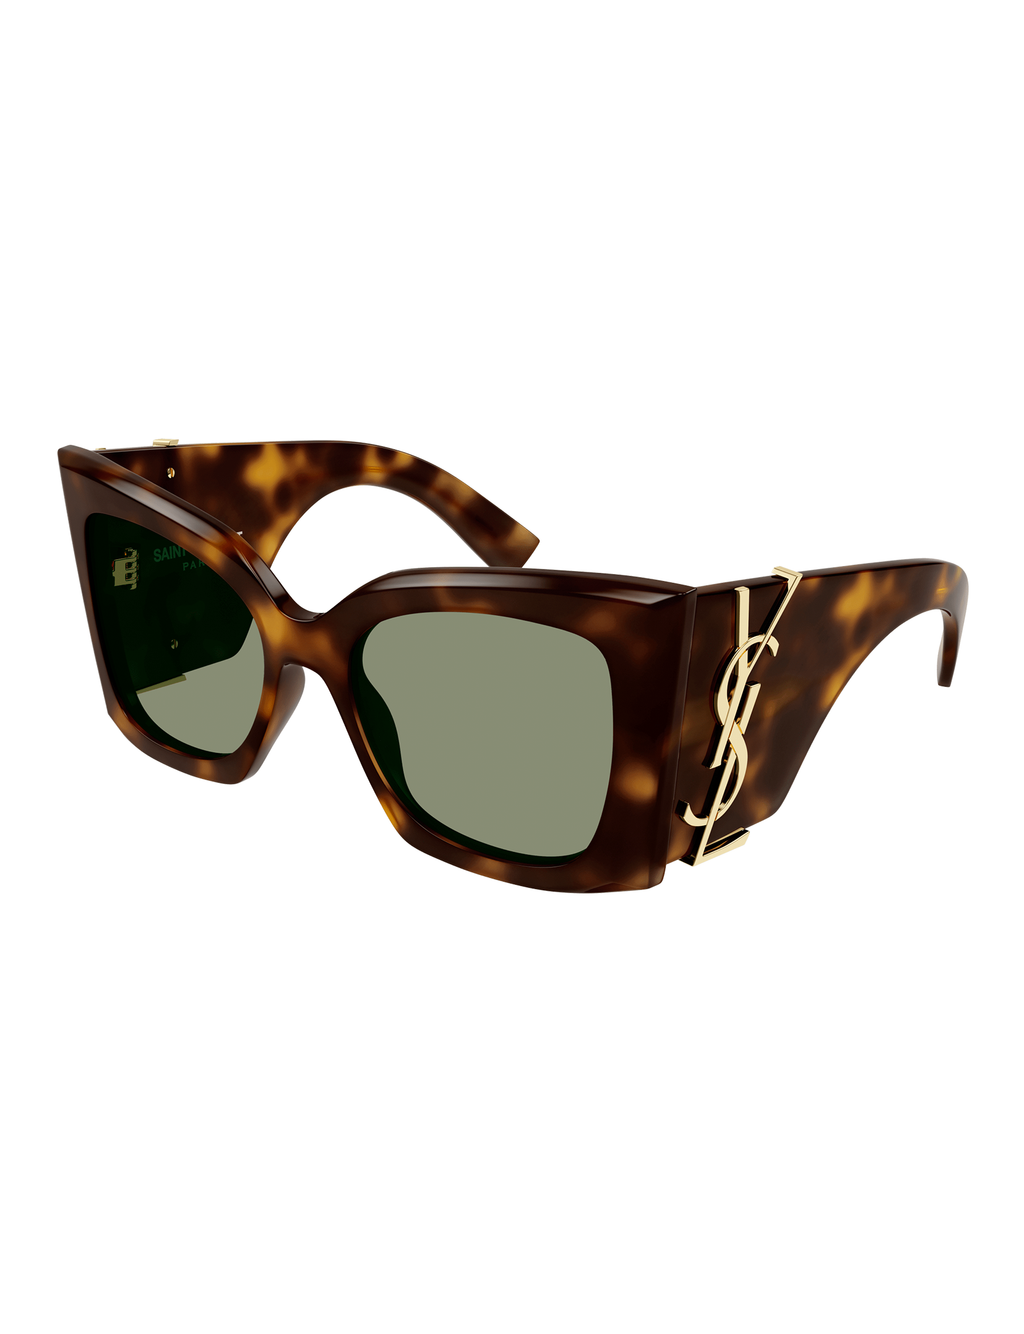 Blaze Oversized Cat Eye Sunglasses, Tortoise/Green